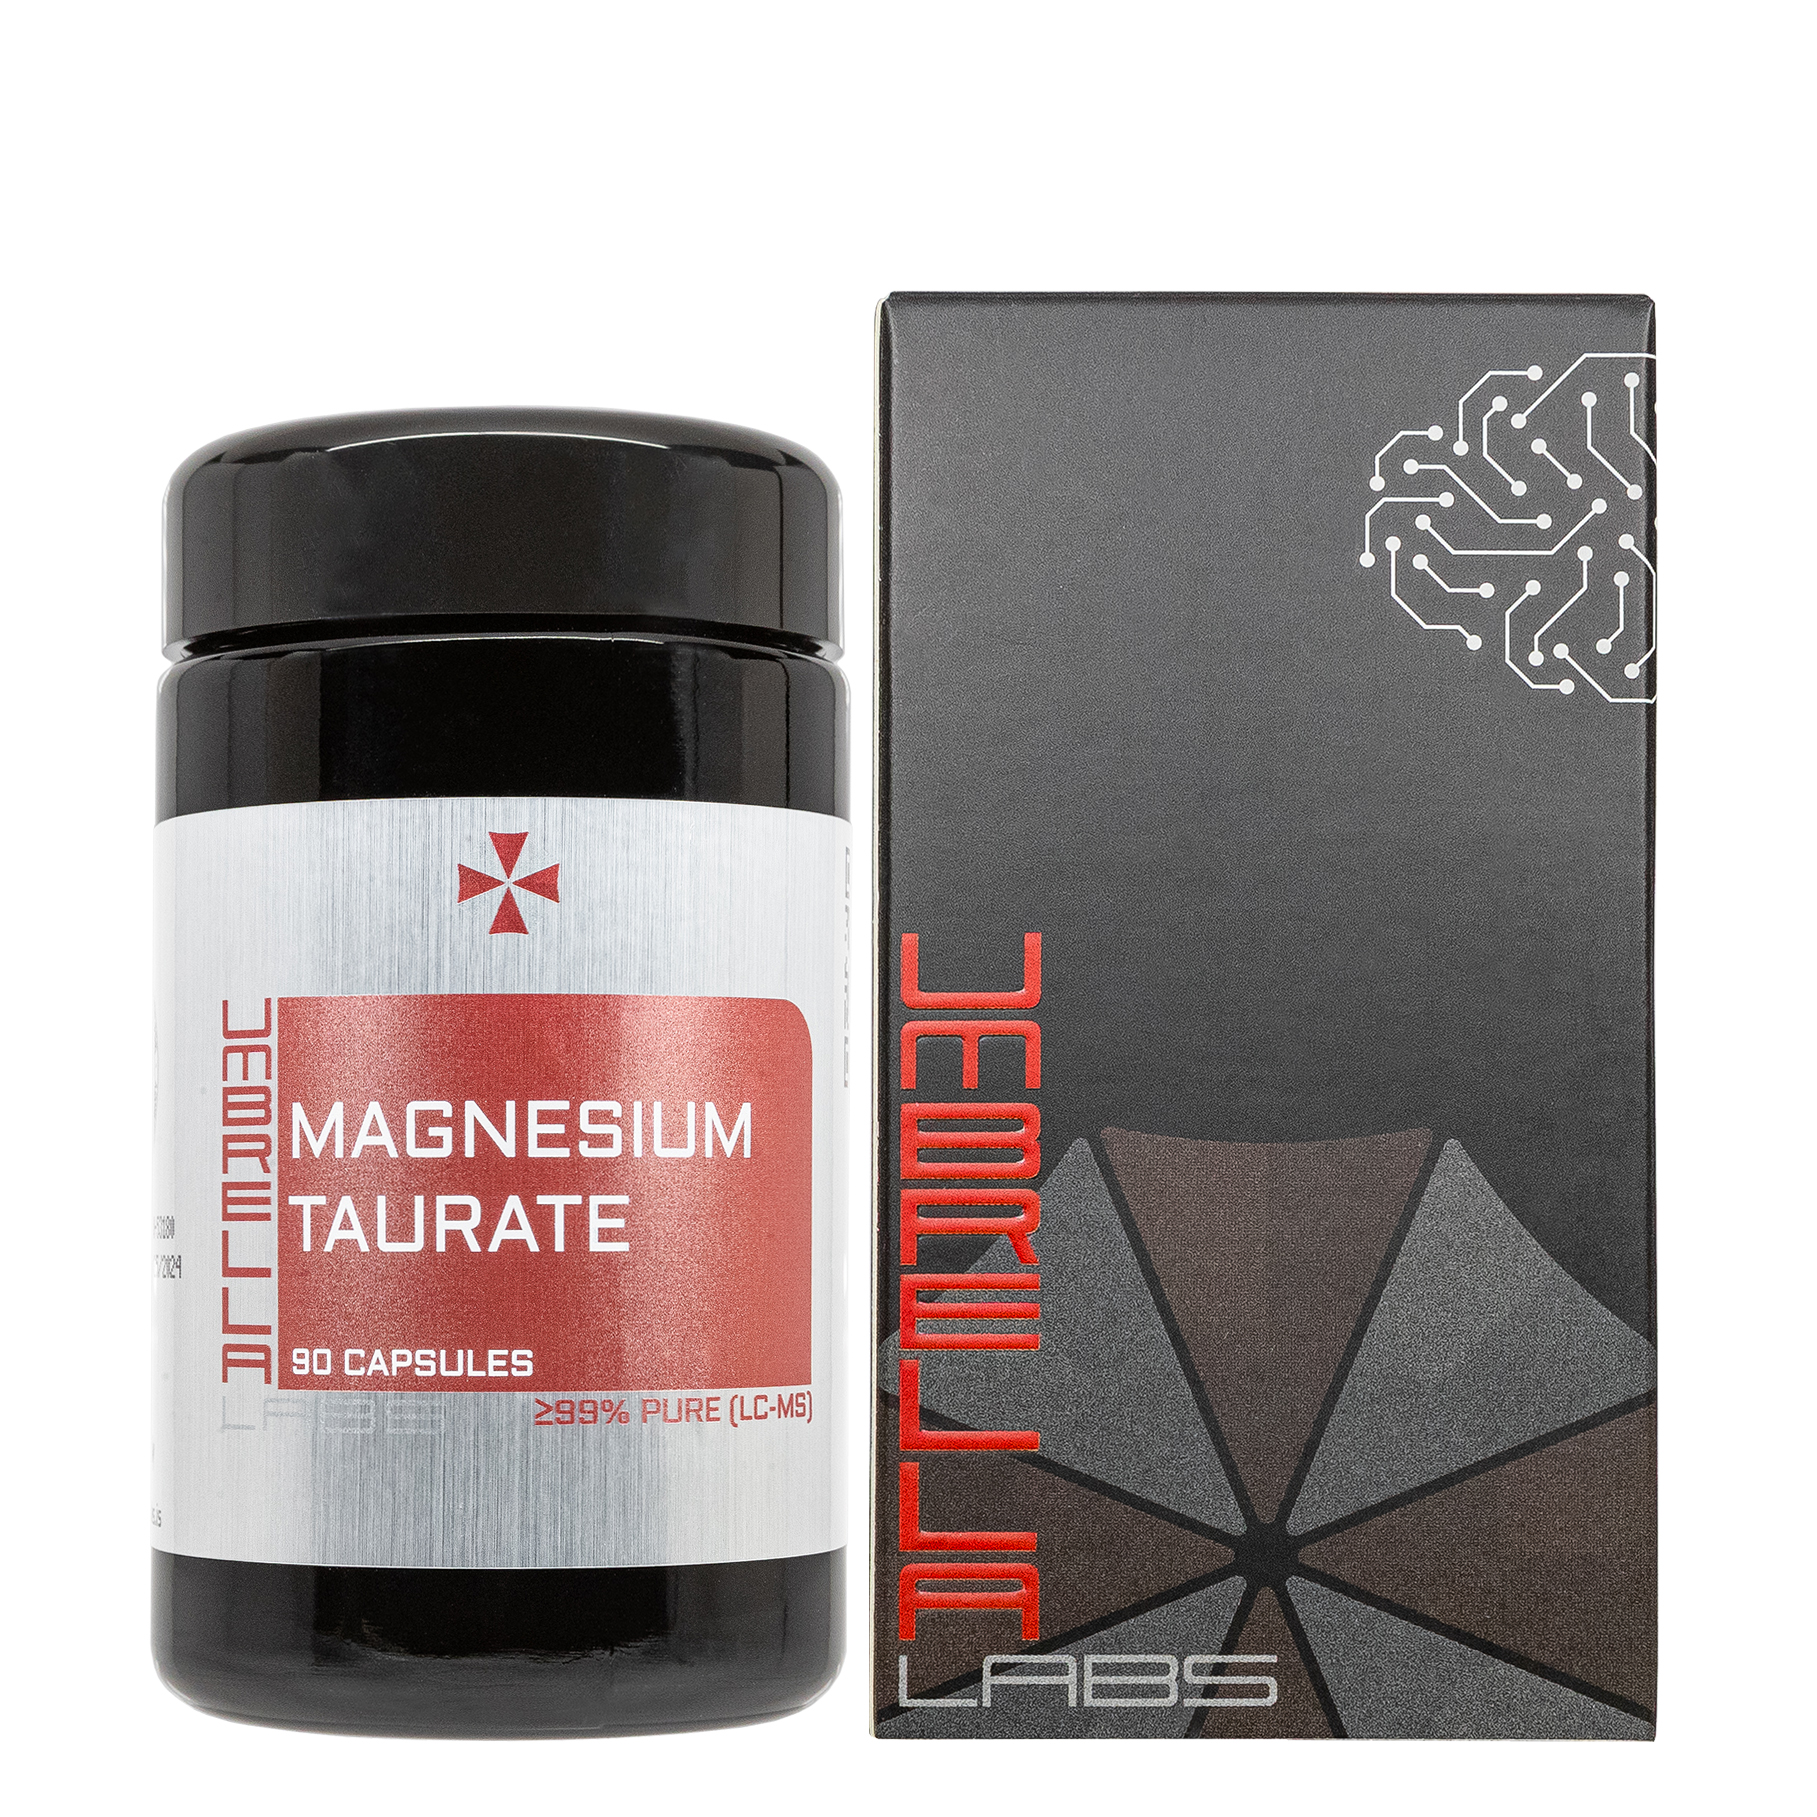 magnesium taurate powder (90 capsules)